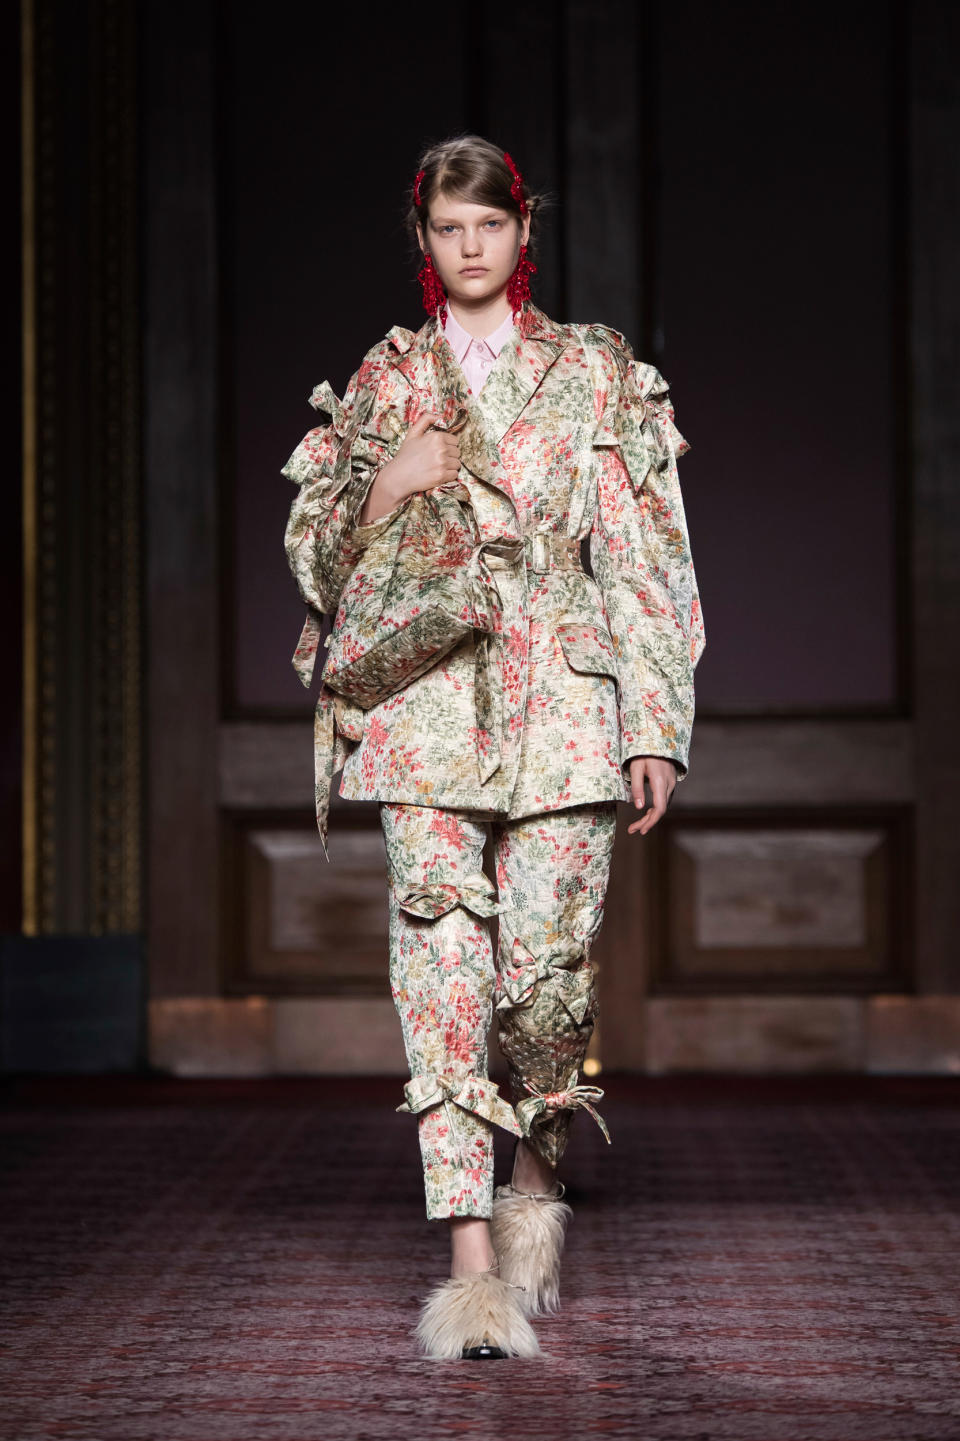 <p>Inspiriert von asiatischen Einflüssen präsentierte die irische Designerin Simone Rocha ihre Entwürfe der Herbst/Winter-Kollektion 2019. Der Fokus lag dabei auf traditionellen Textilien und zum Outfit passenden Taschen. Bei diesem Look fielen aber vor allem die Fell-Slipper ins Auge. (Bild: AP Photo) </p>